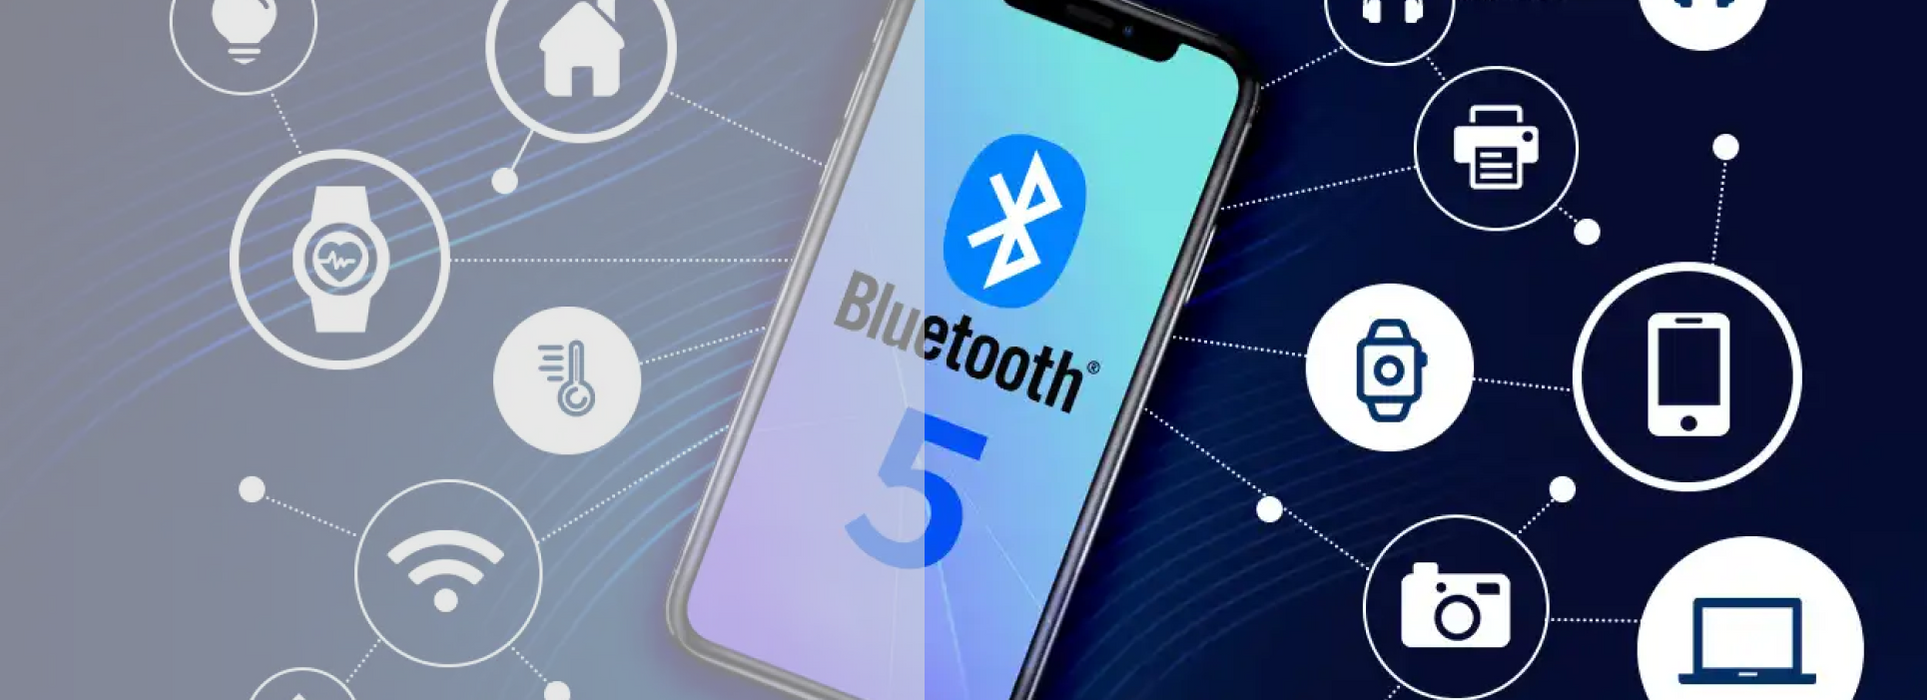 ¿Qué es Bluetooth? ¡Todo lo que necesitas saber!